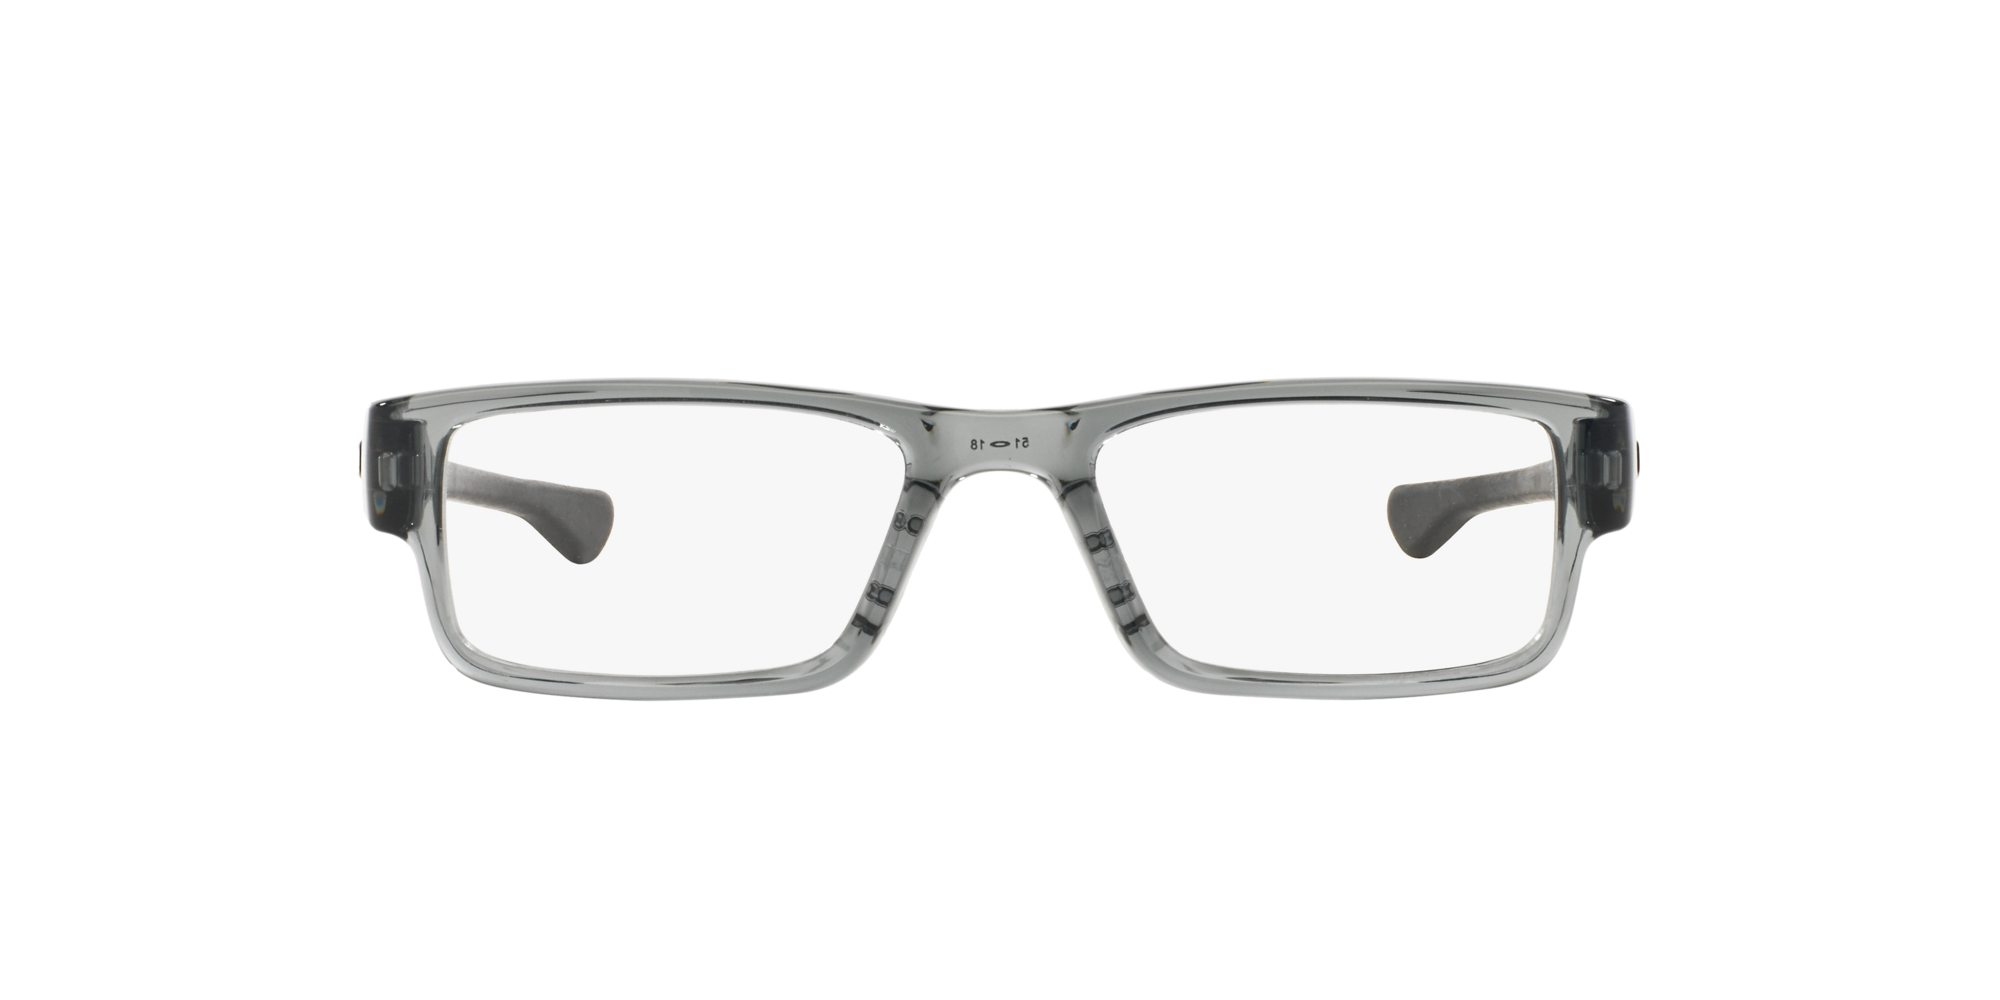 Das Bild zeigt die Korrektionsbrille OX8046 804603  von der Marke Oakley  in  grey  shadow.